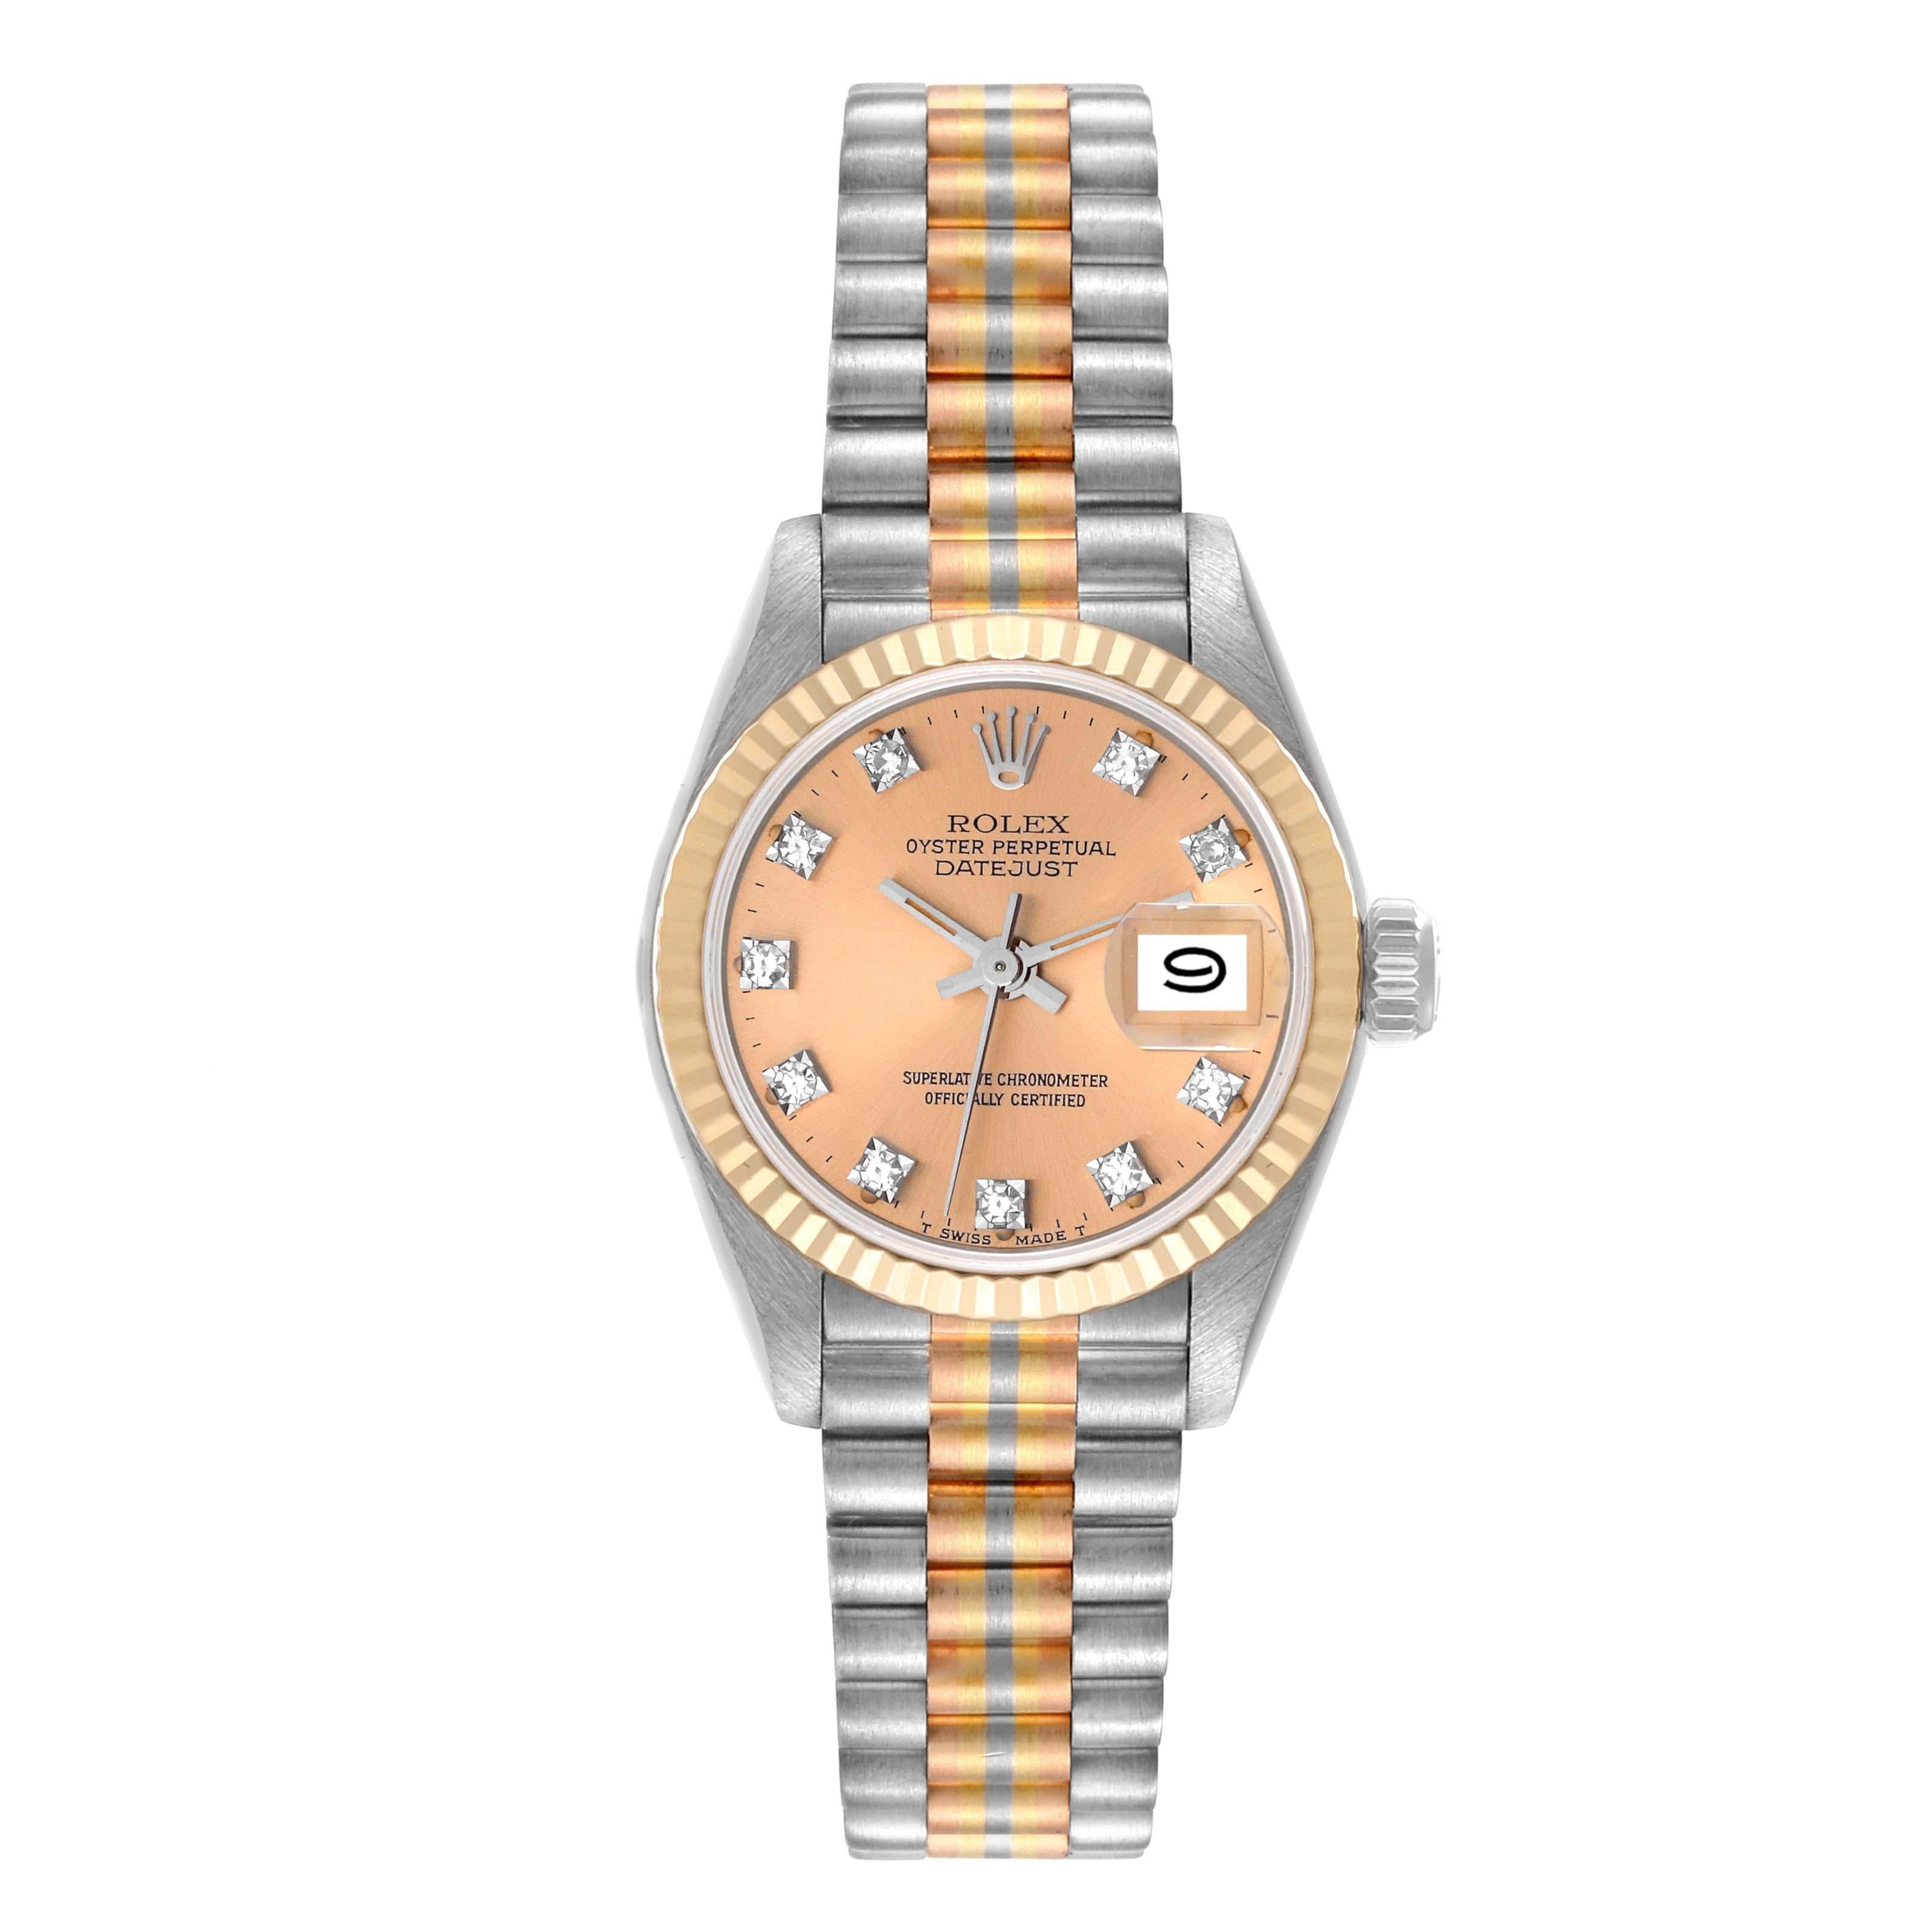 Rolex President Tridor White Yellow Rose Gold Diamond Ladies Watch 69179. Mouvement à remontage automatique officiellement certifié chronomètre. Boîtier en or blanc 18 carats de 26,0 mm de diamètre. Logo Rolex sur la couronne. Lunette cannelée en or